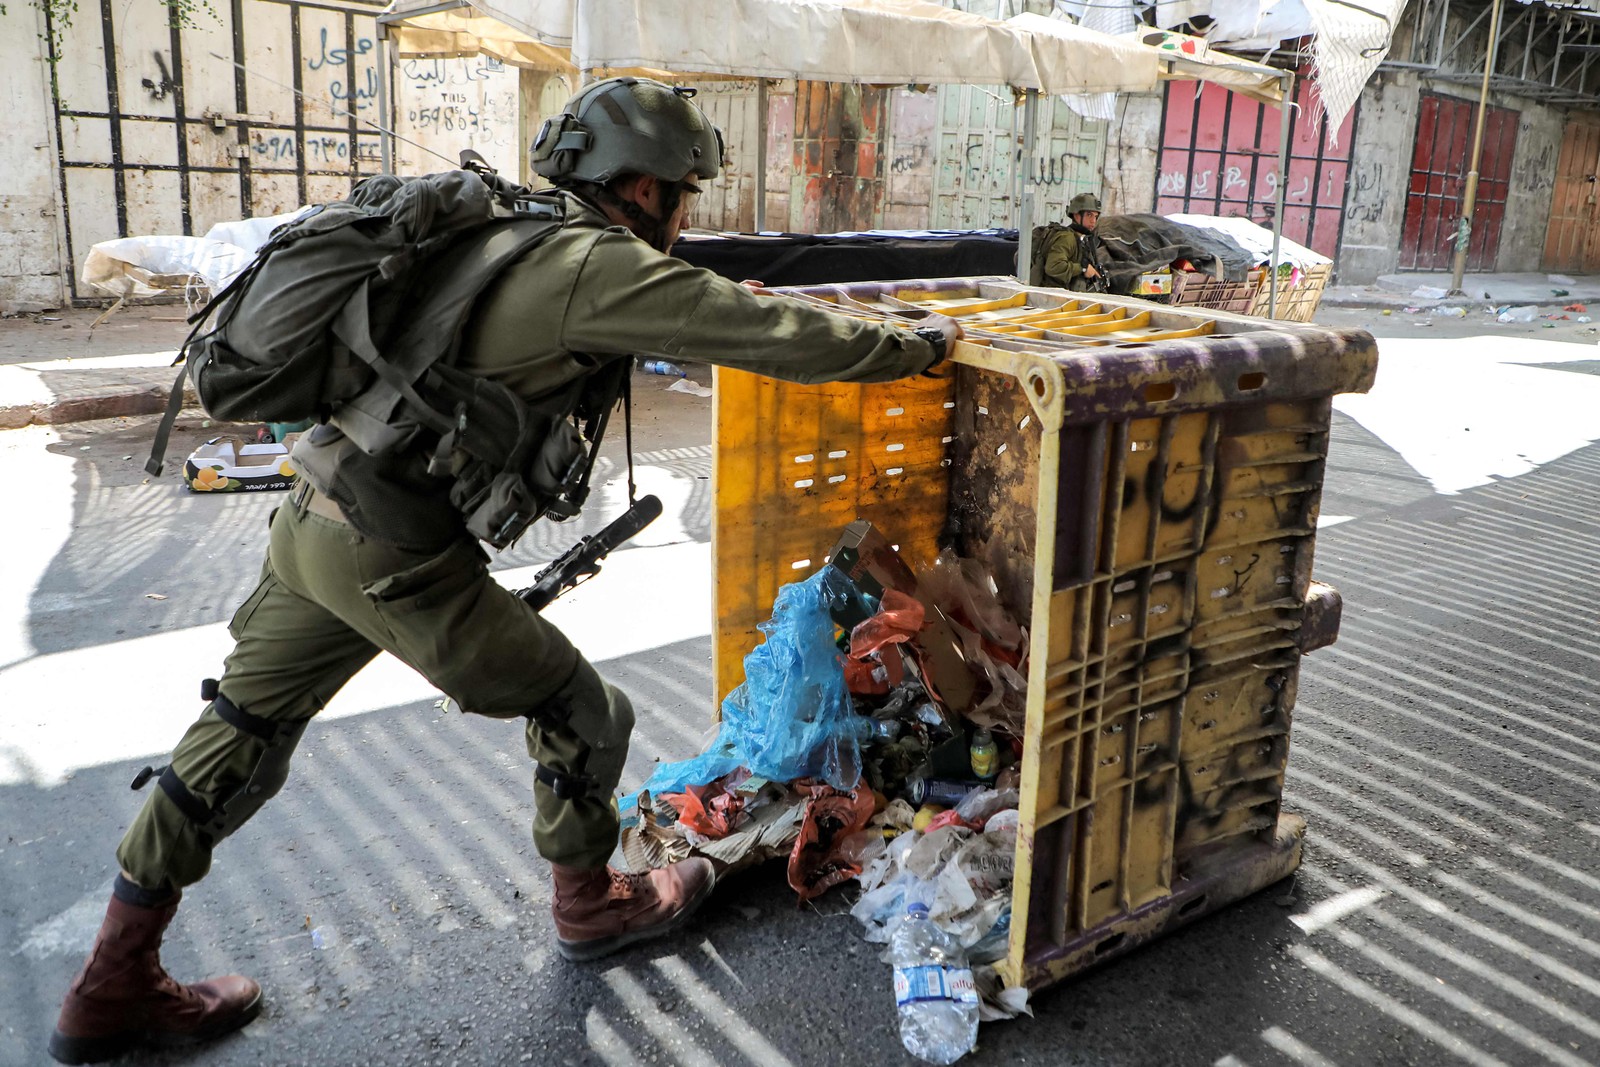 Um soldado israelense derruba uma lixeira para se proteger durante confrontos no centro de Hebron — Foto: MOSAB SHAWER / AFP